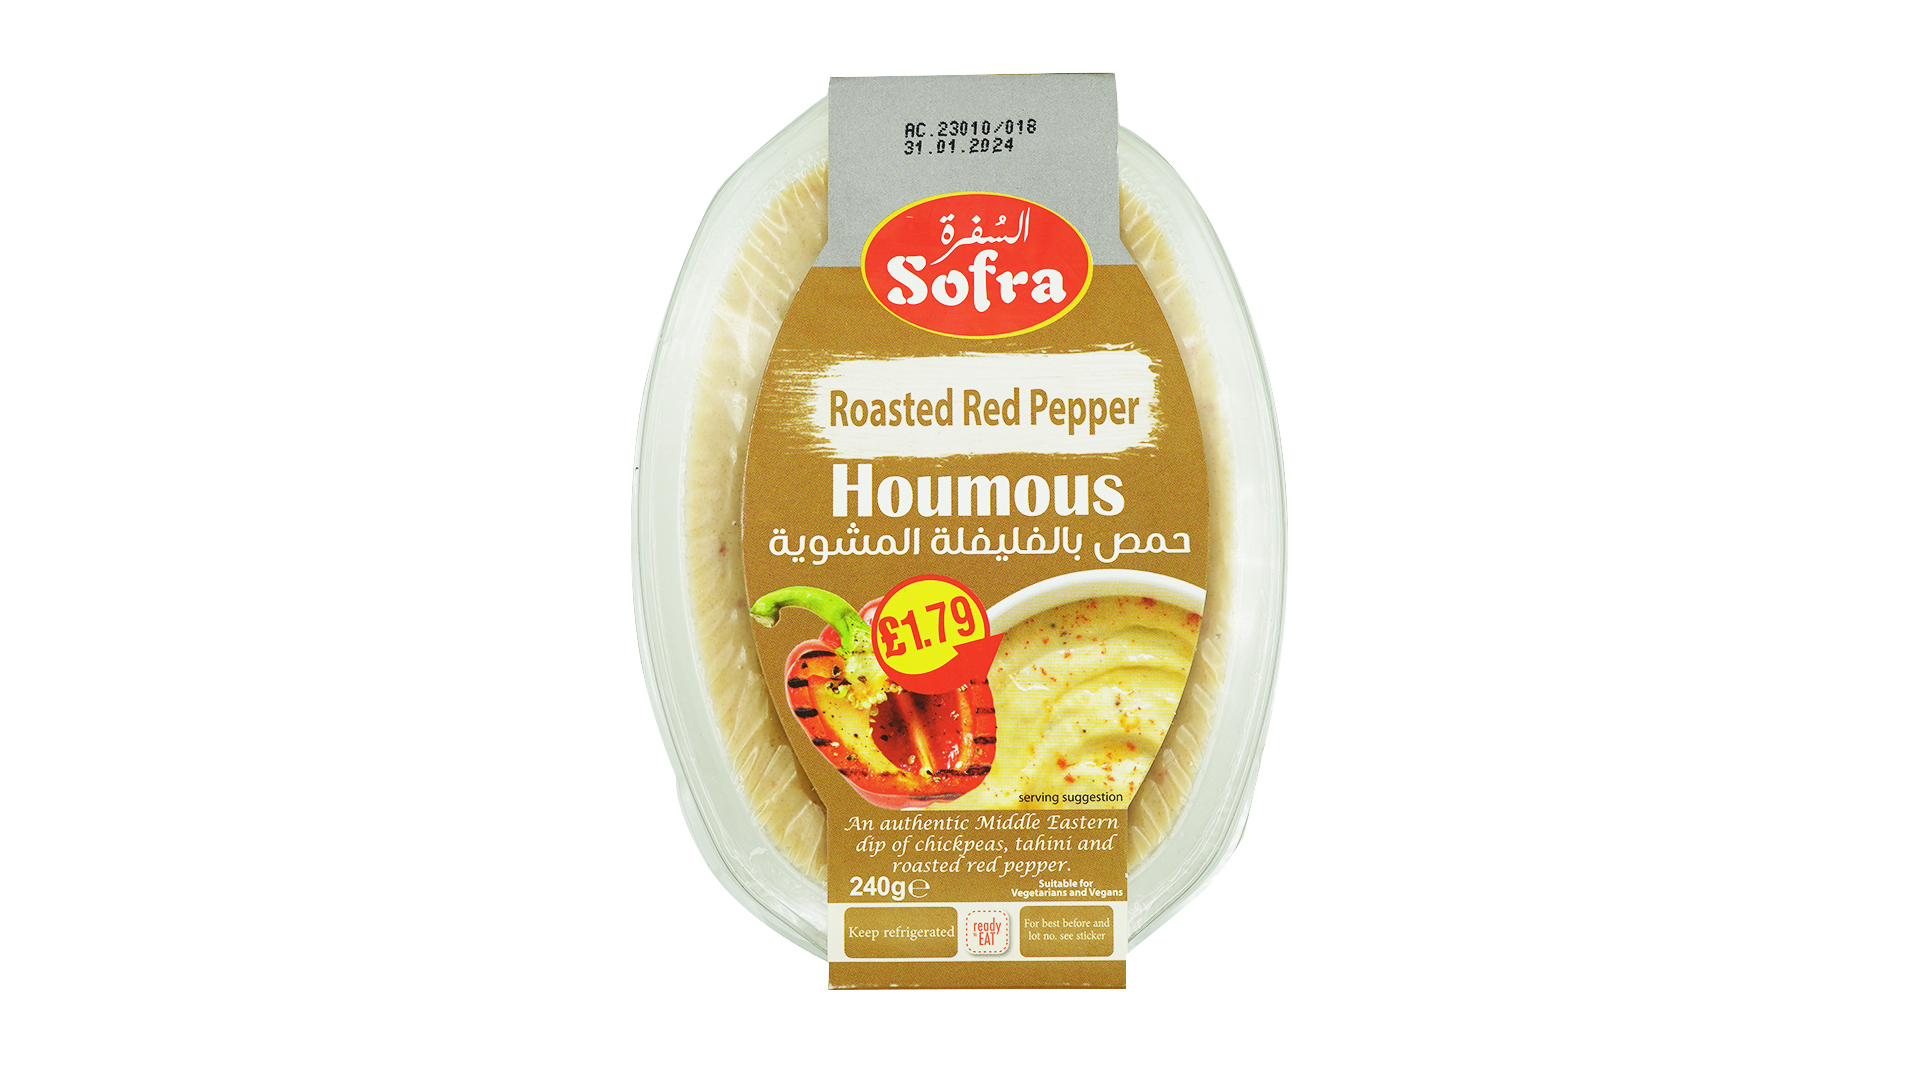 Sofra roasted red pepper houmous 240g 1